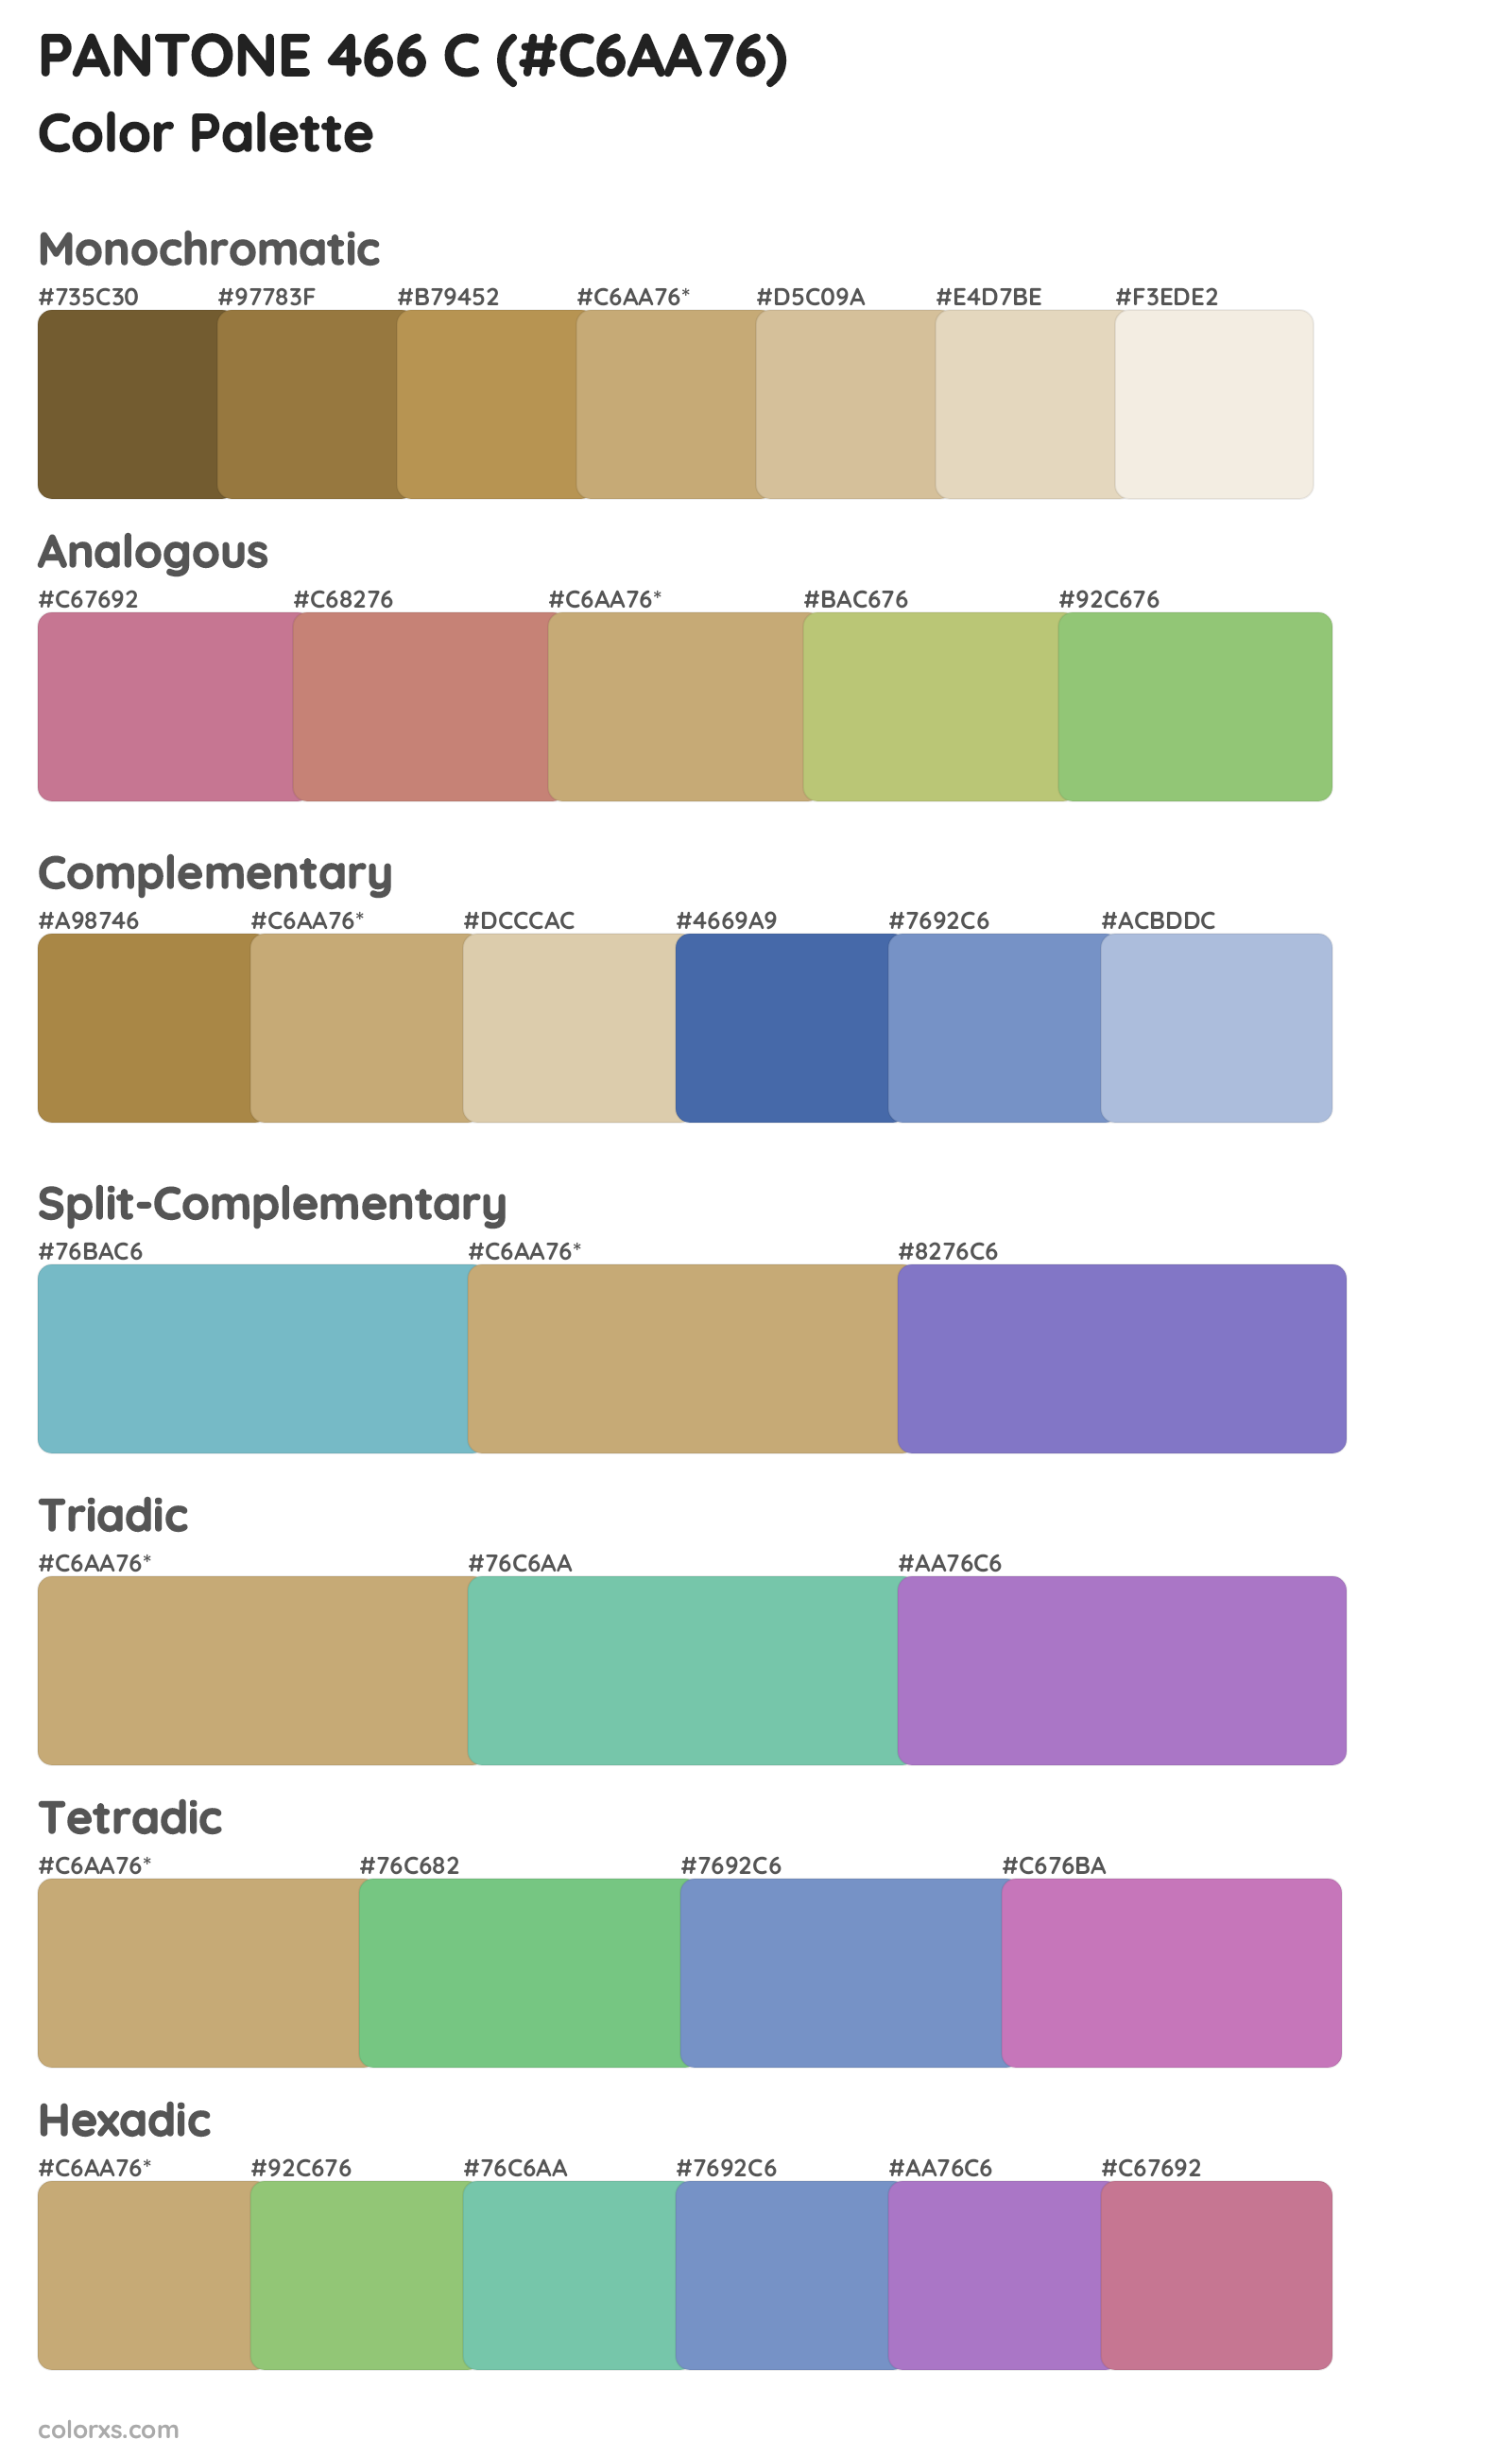 PANTONE 466 C Color Scheme Palettes